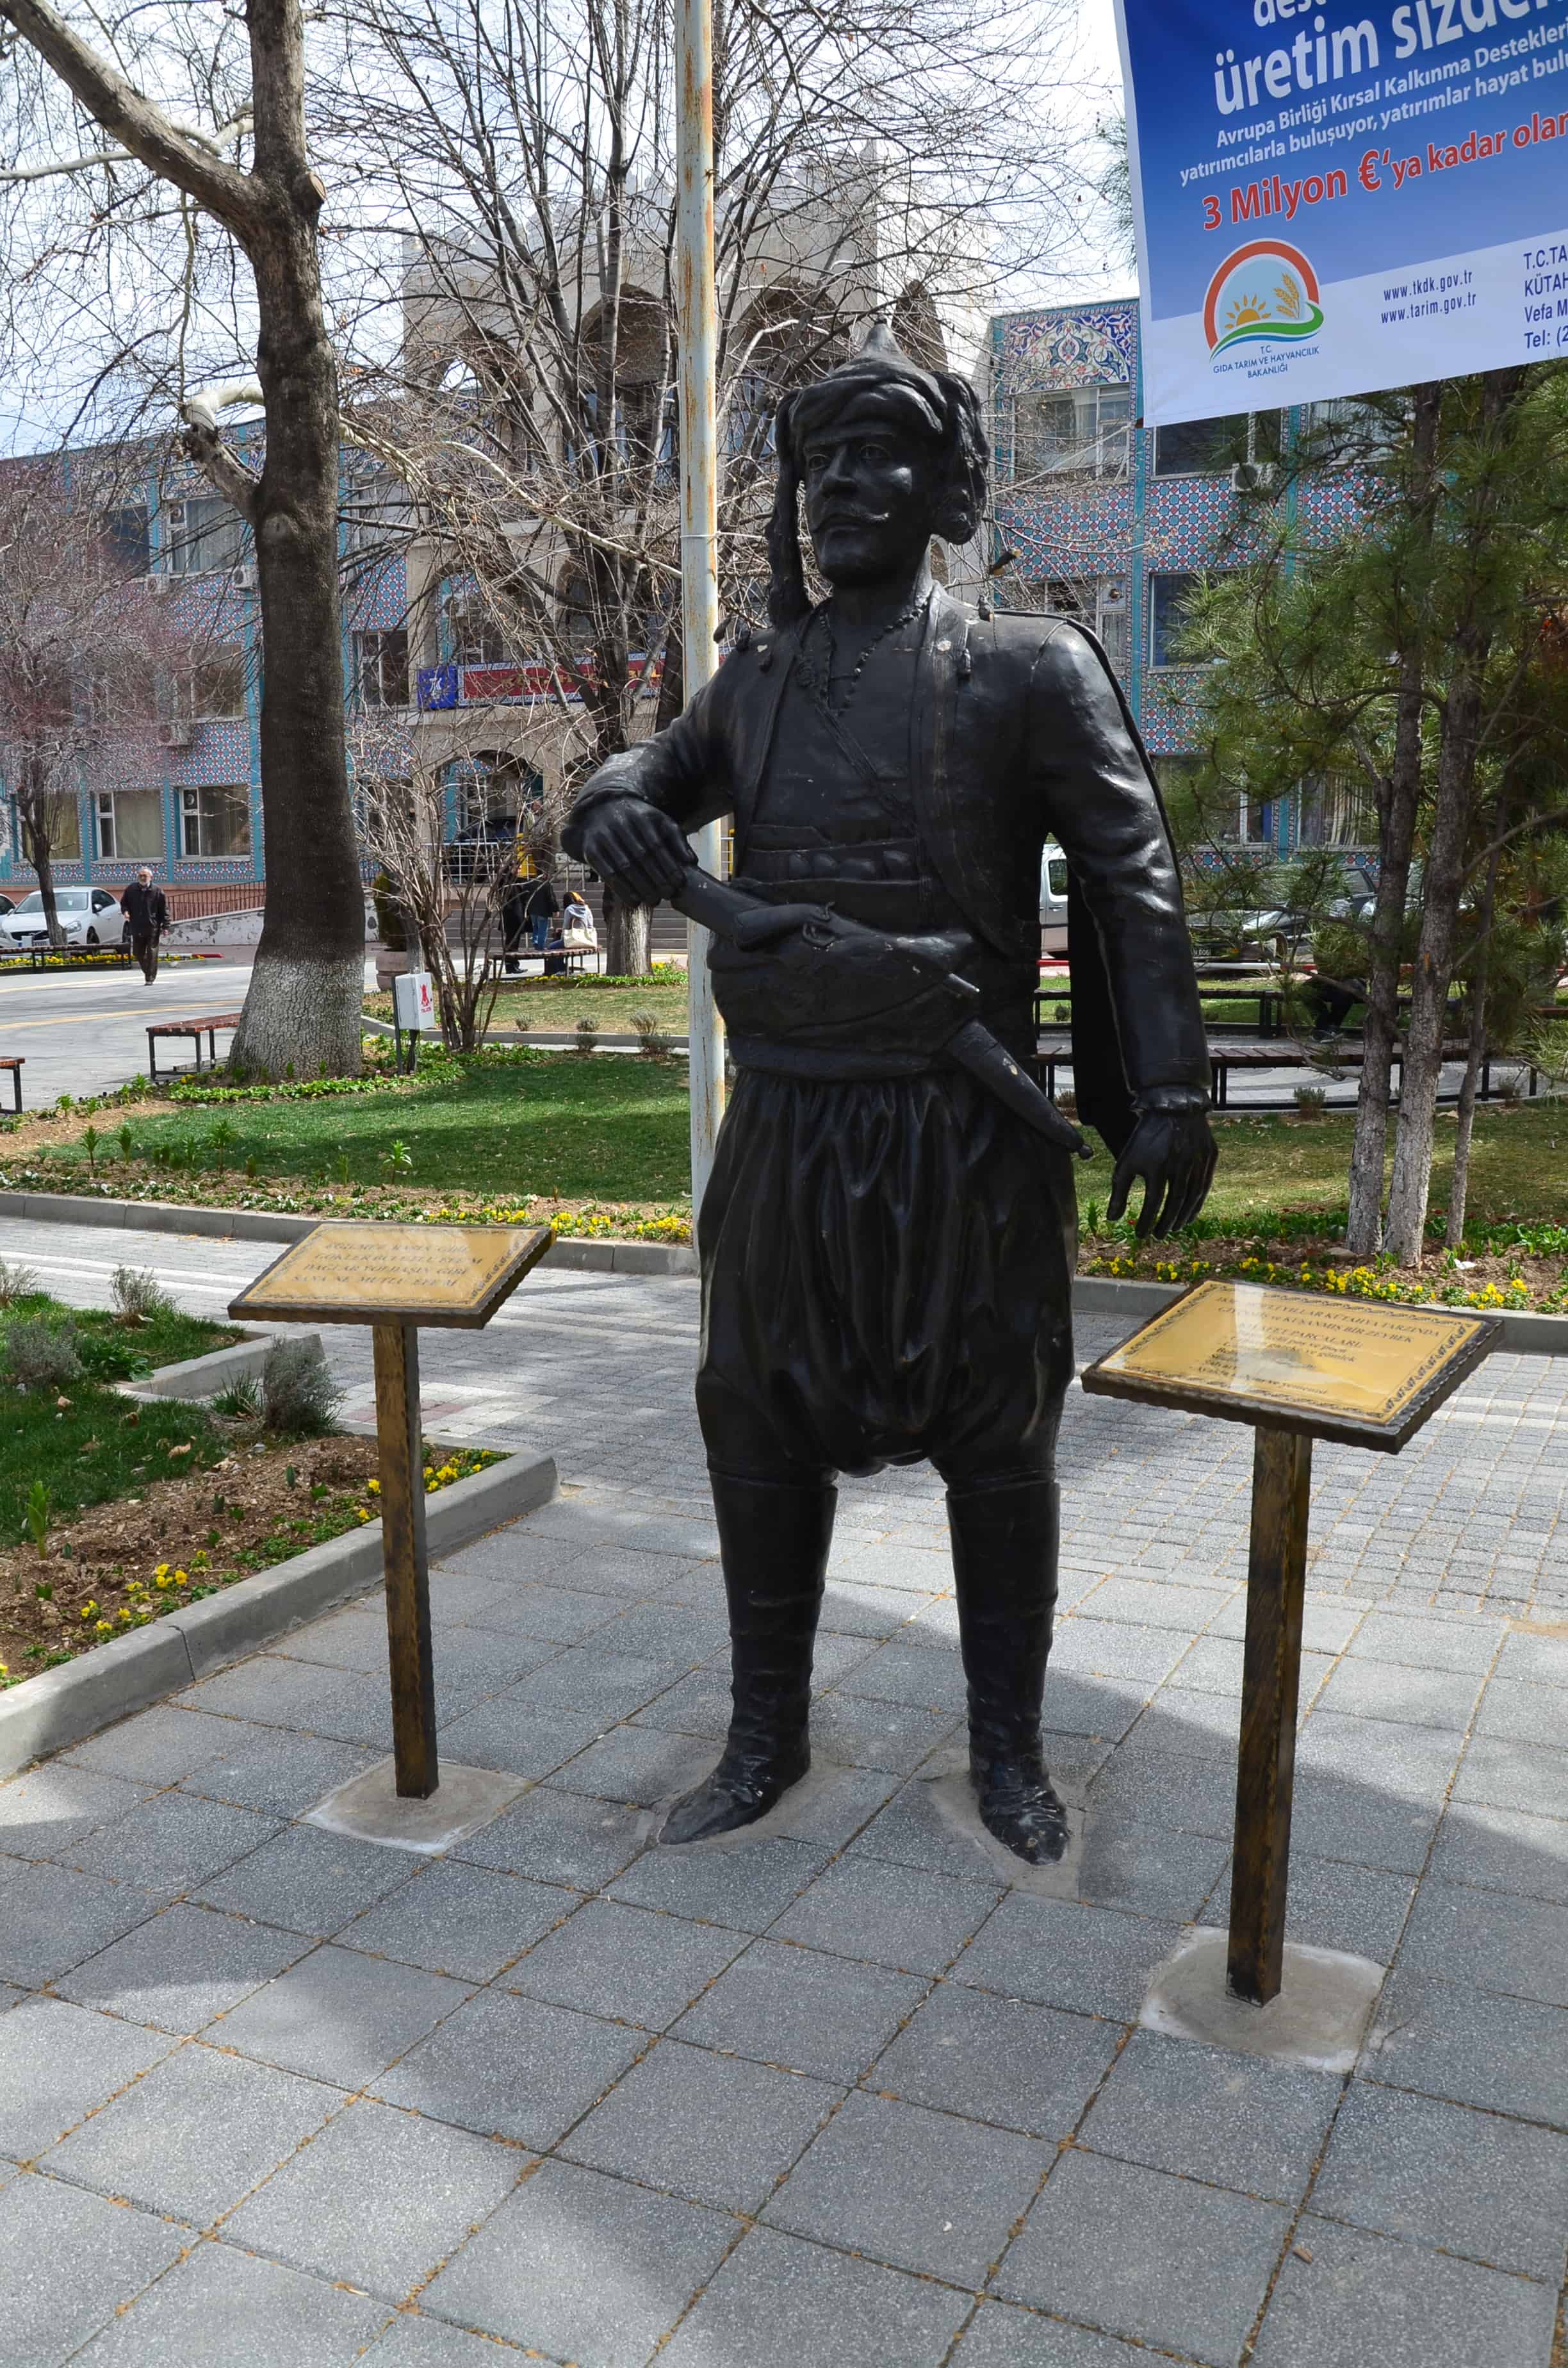 Zeybek statue in Kütahya, Turkey